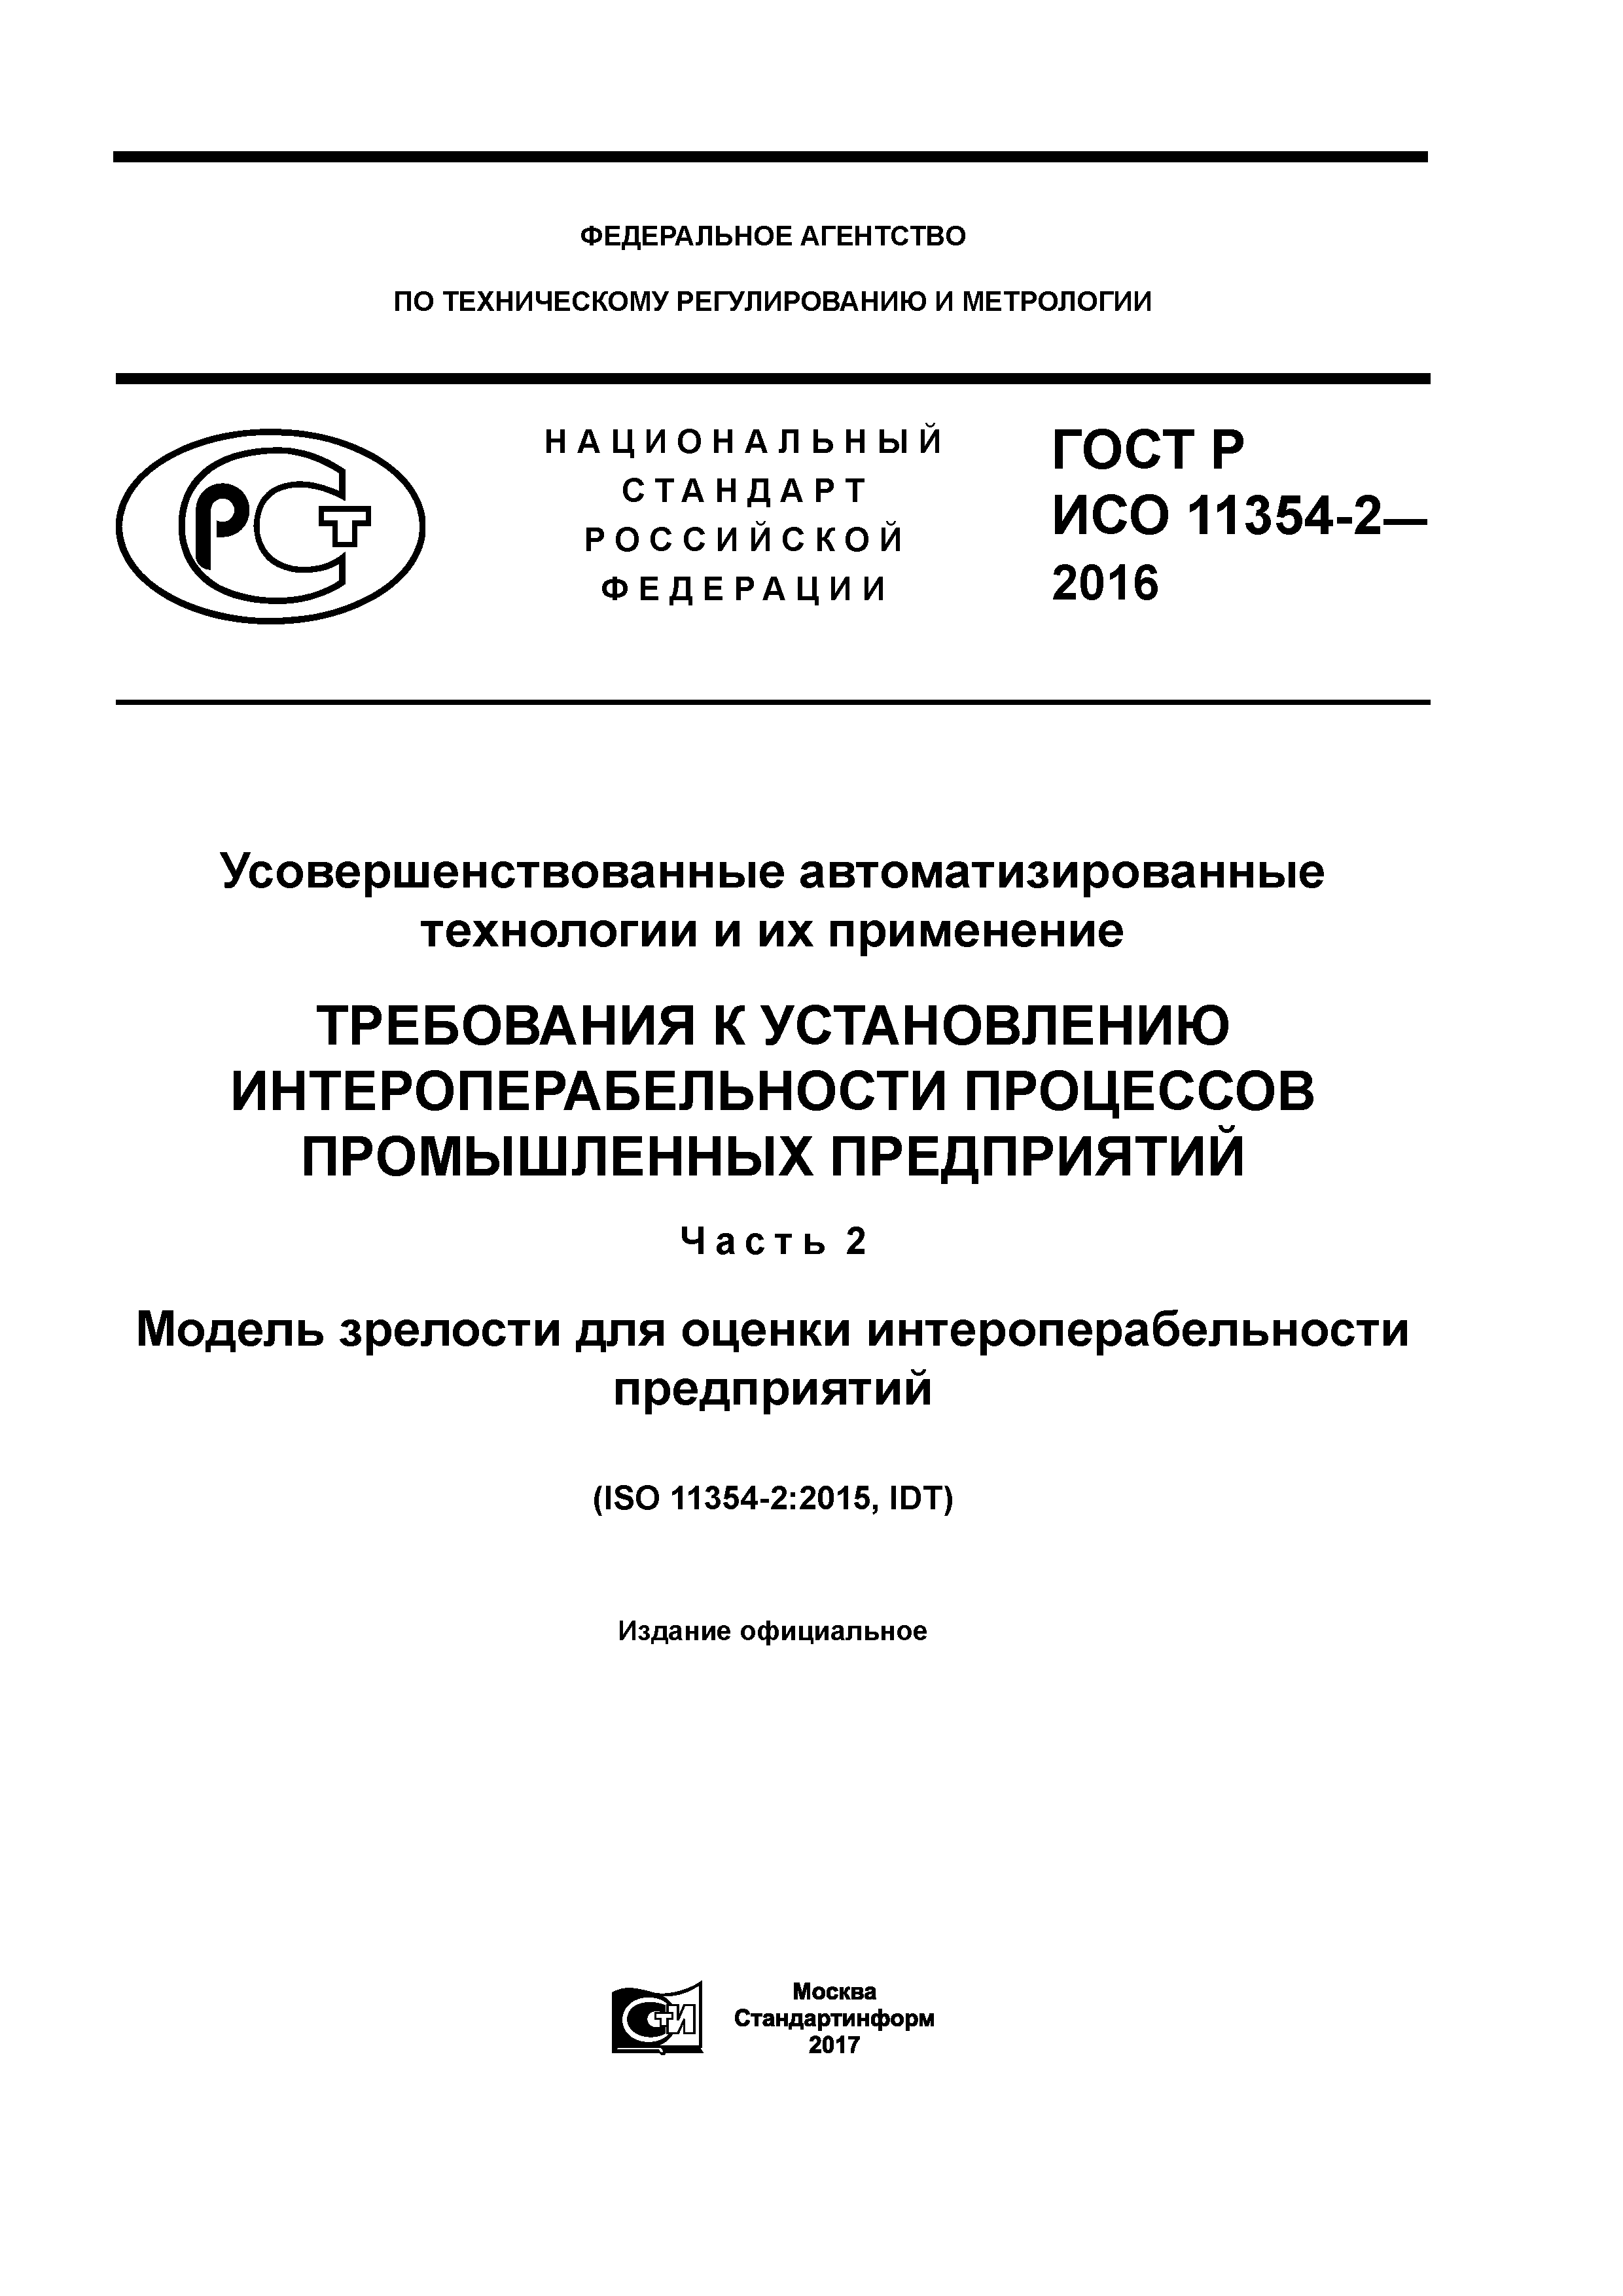 ГОСТ Р ИСО 11354-2-2016